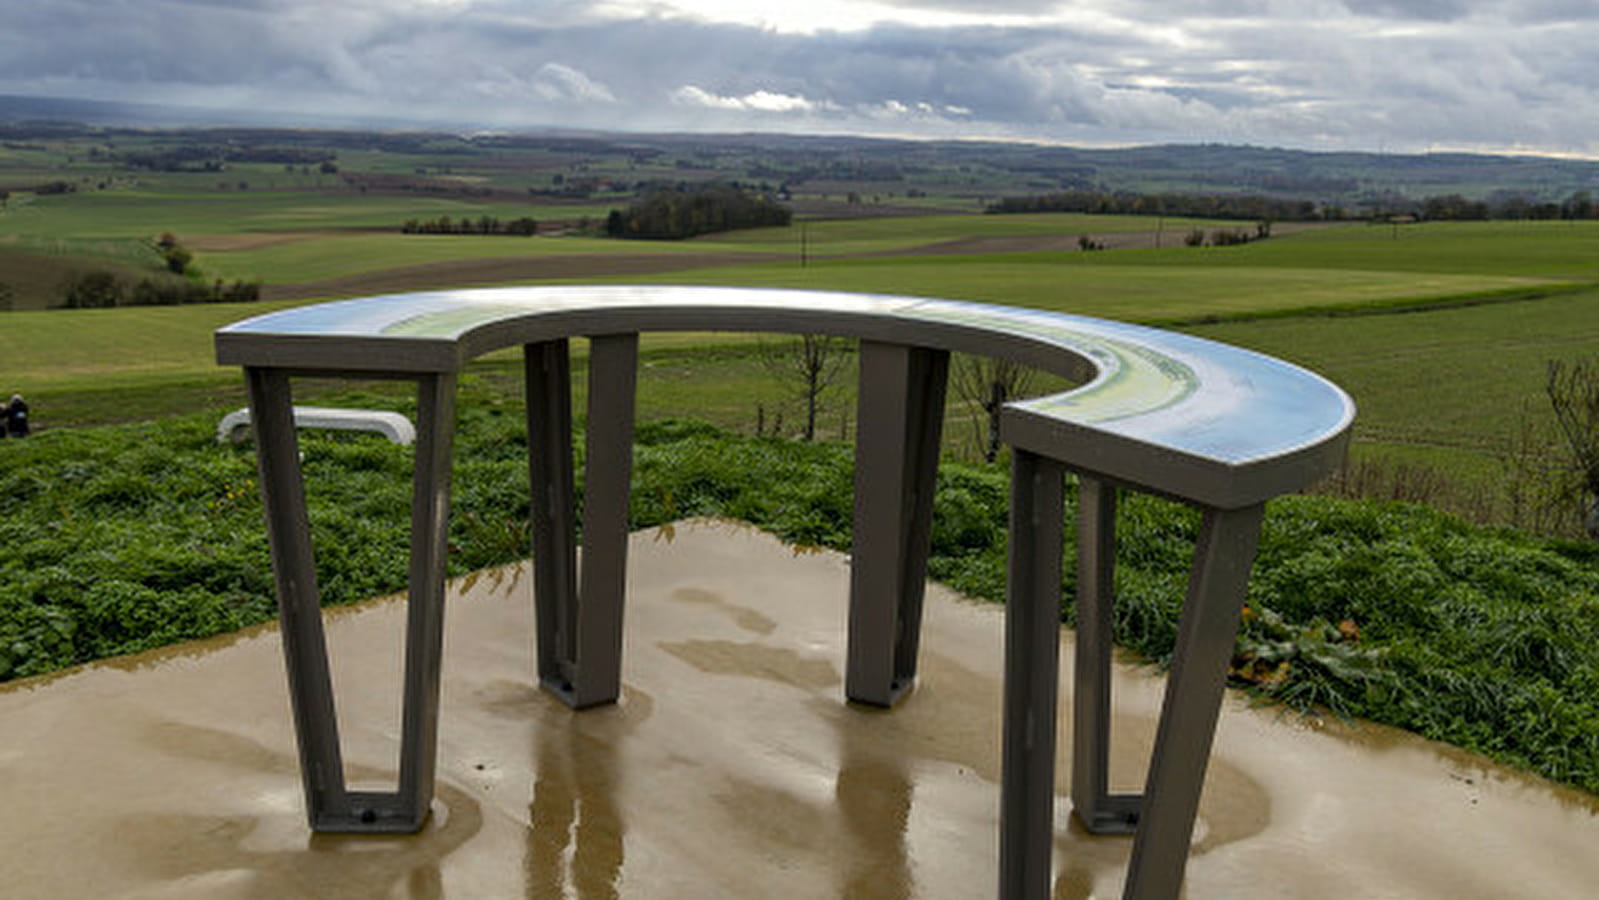  Panoramas et table d'orientation à Perreuse